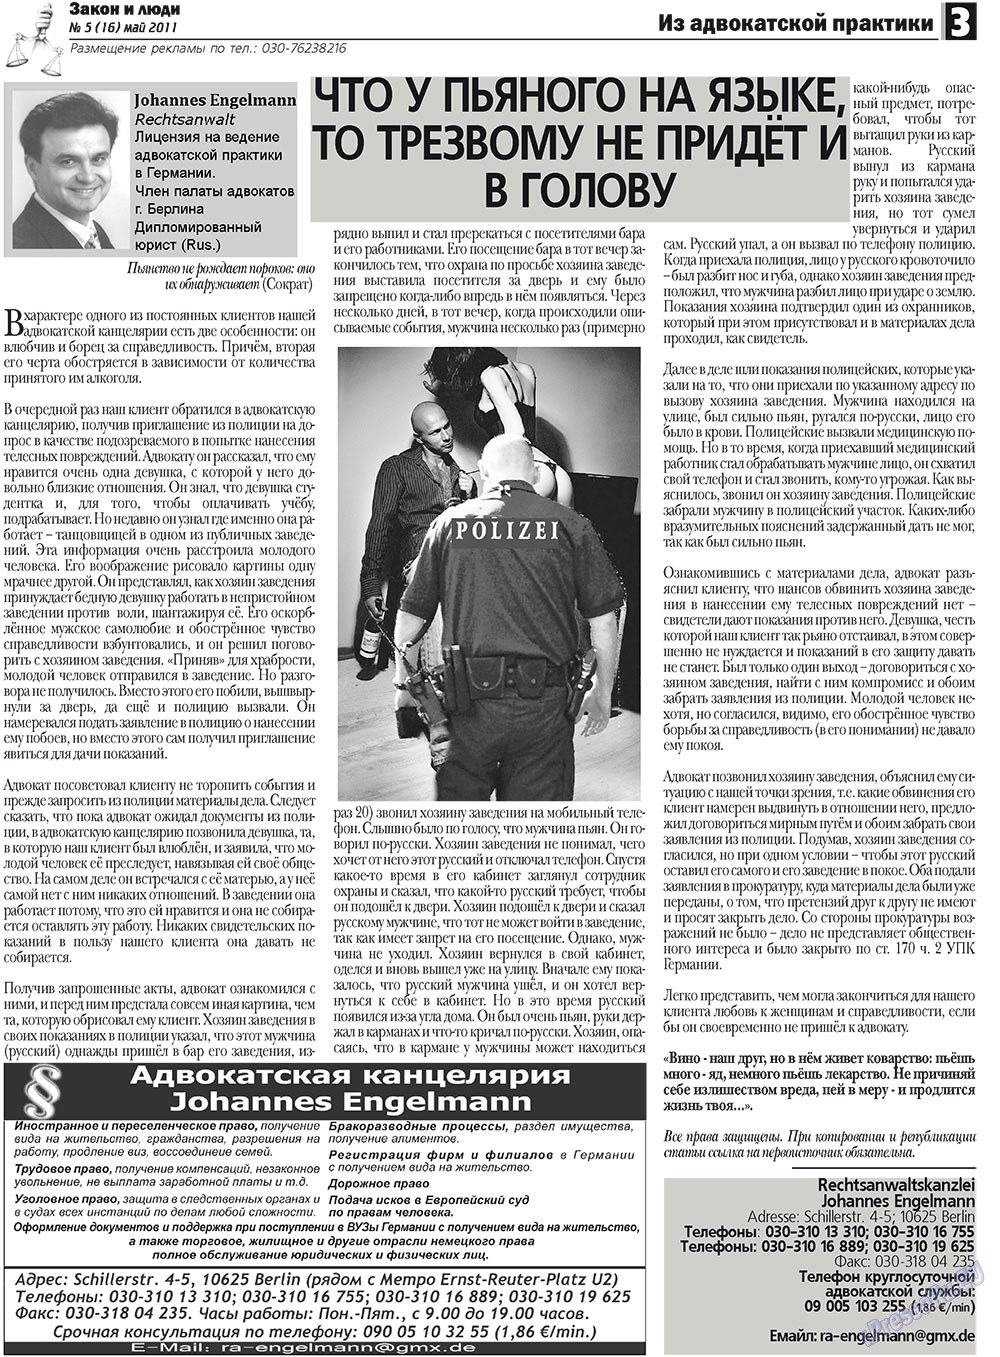 Закон и люди, газета. 2011 №5 стр.3